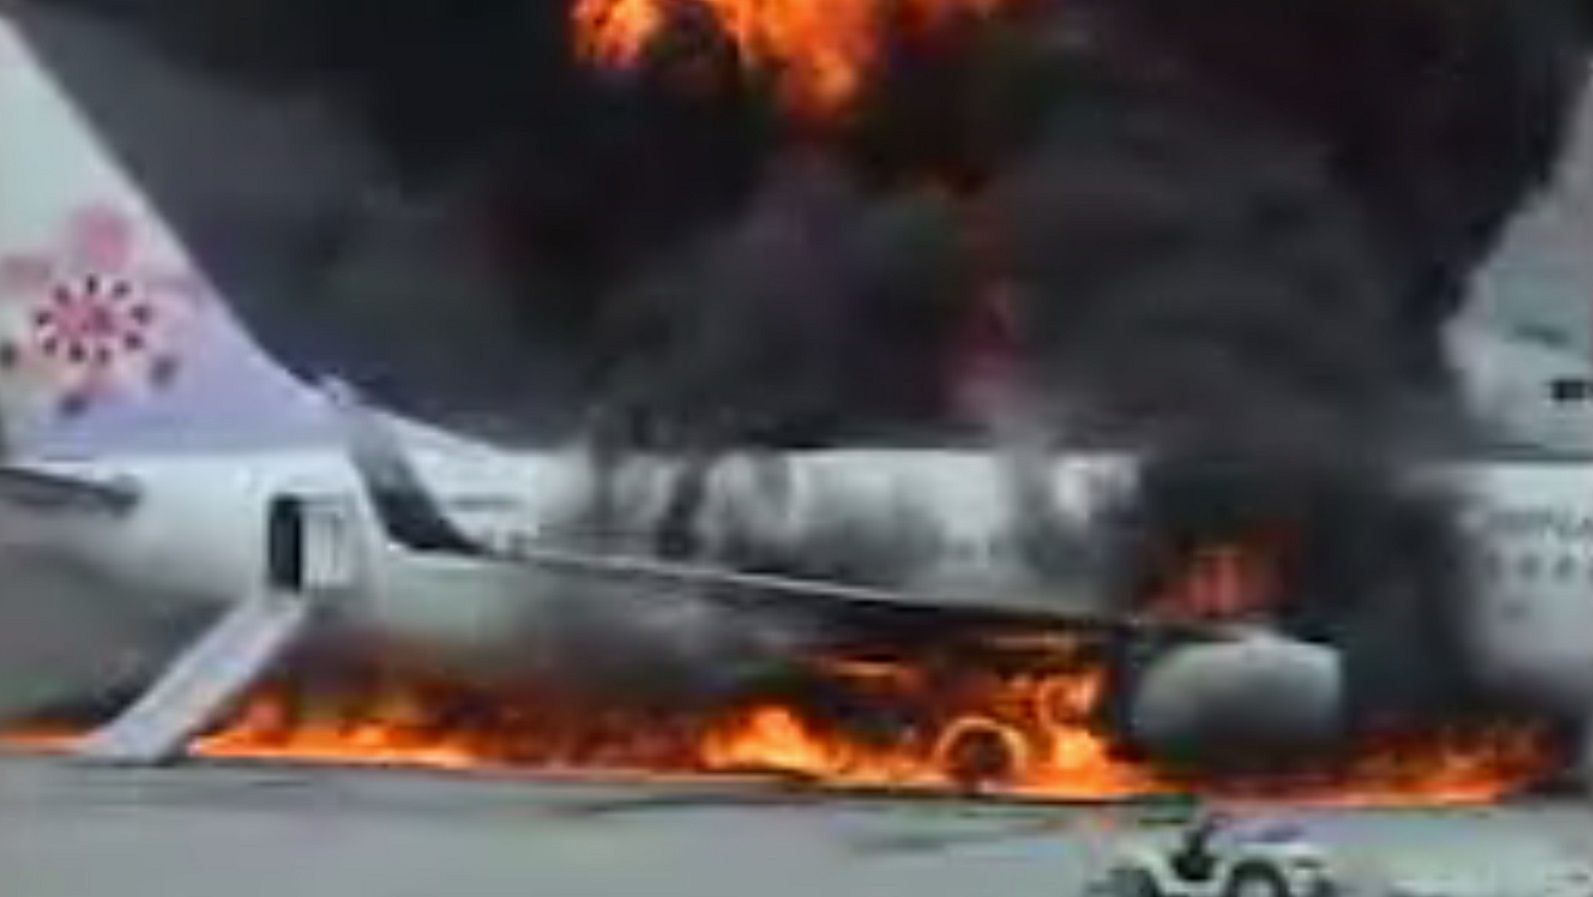 2007年｢中華航空120便｣炎上爆発事故の新事実 乗客乗員165人乗せた旅客機が着陸後に爆発 | 災害･事件･裁判 | 東洋経済オンライン